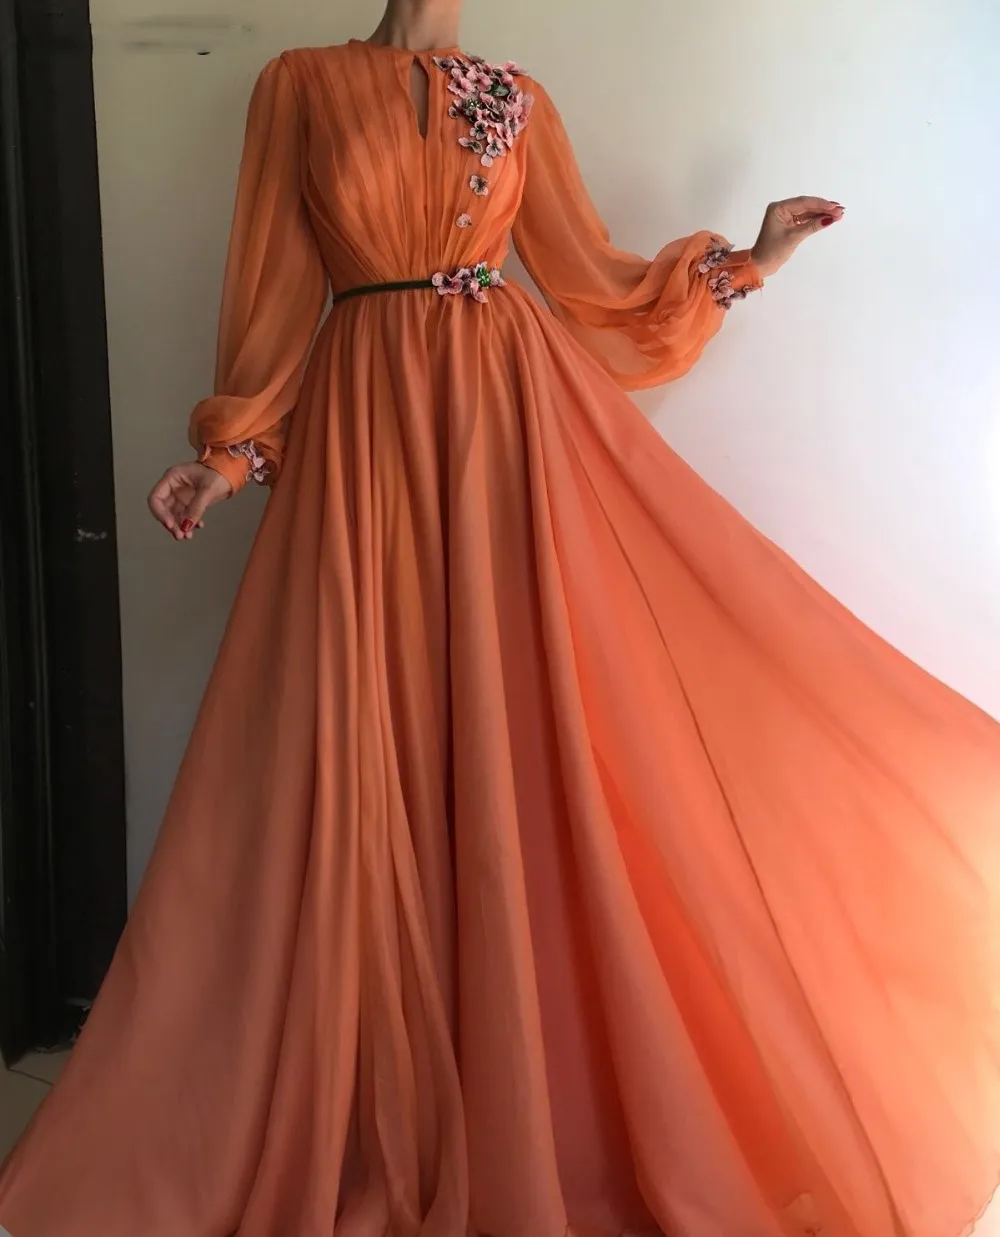 Coral árabe marroquí vestidos de fiesta elegante para mujeres celebridad mangas largas gasa Dubai caftanes vestidos formales 263T